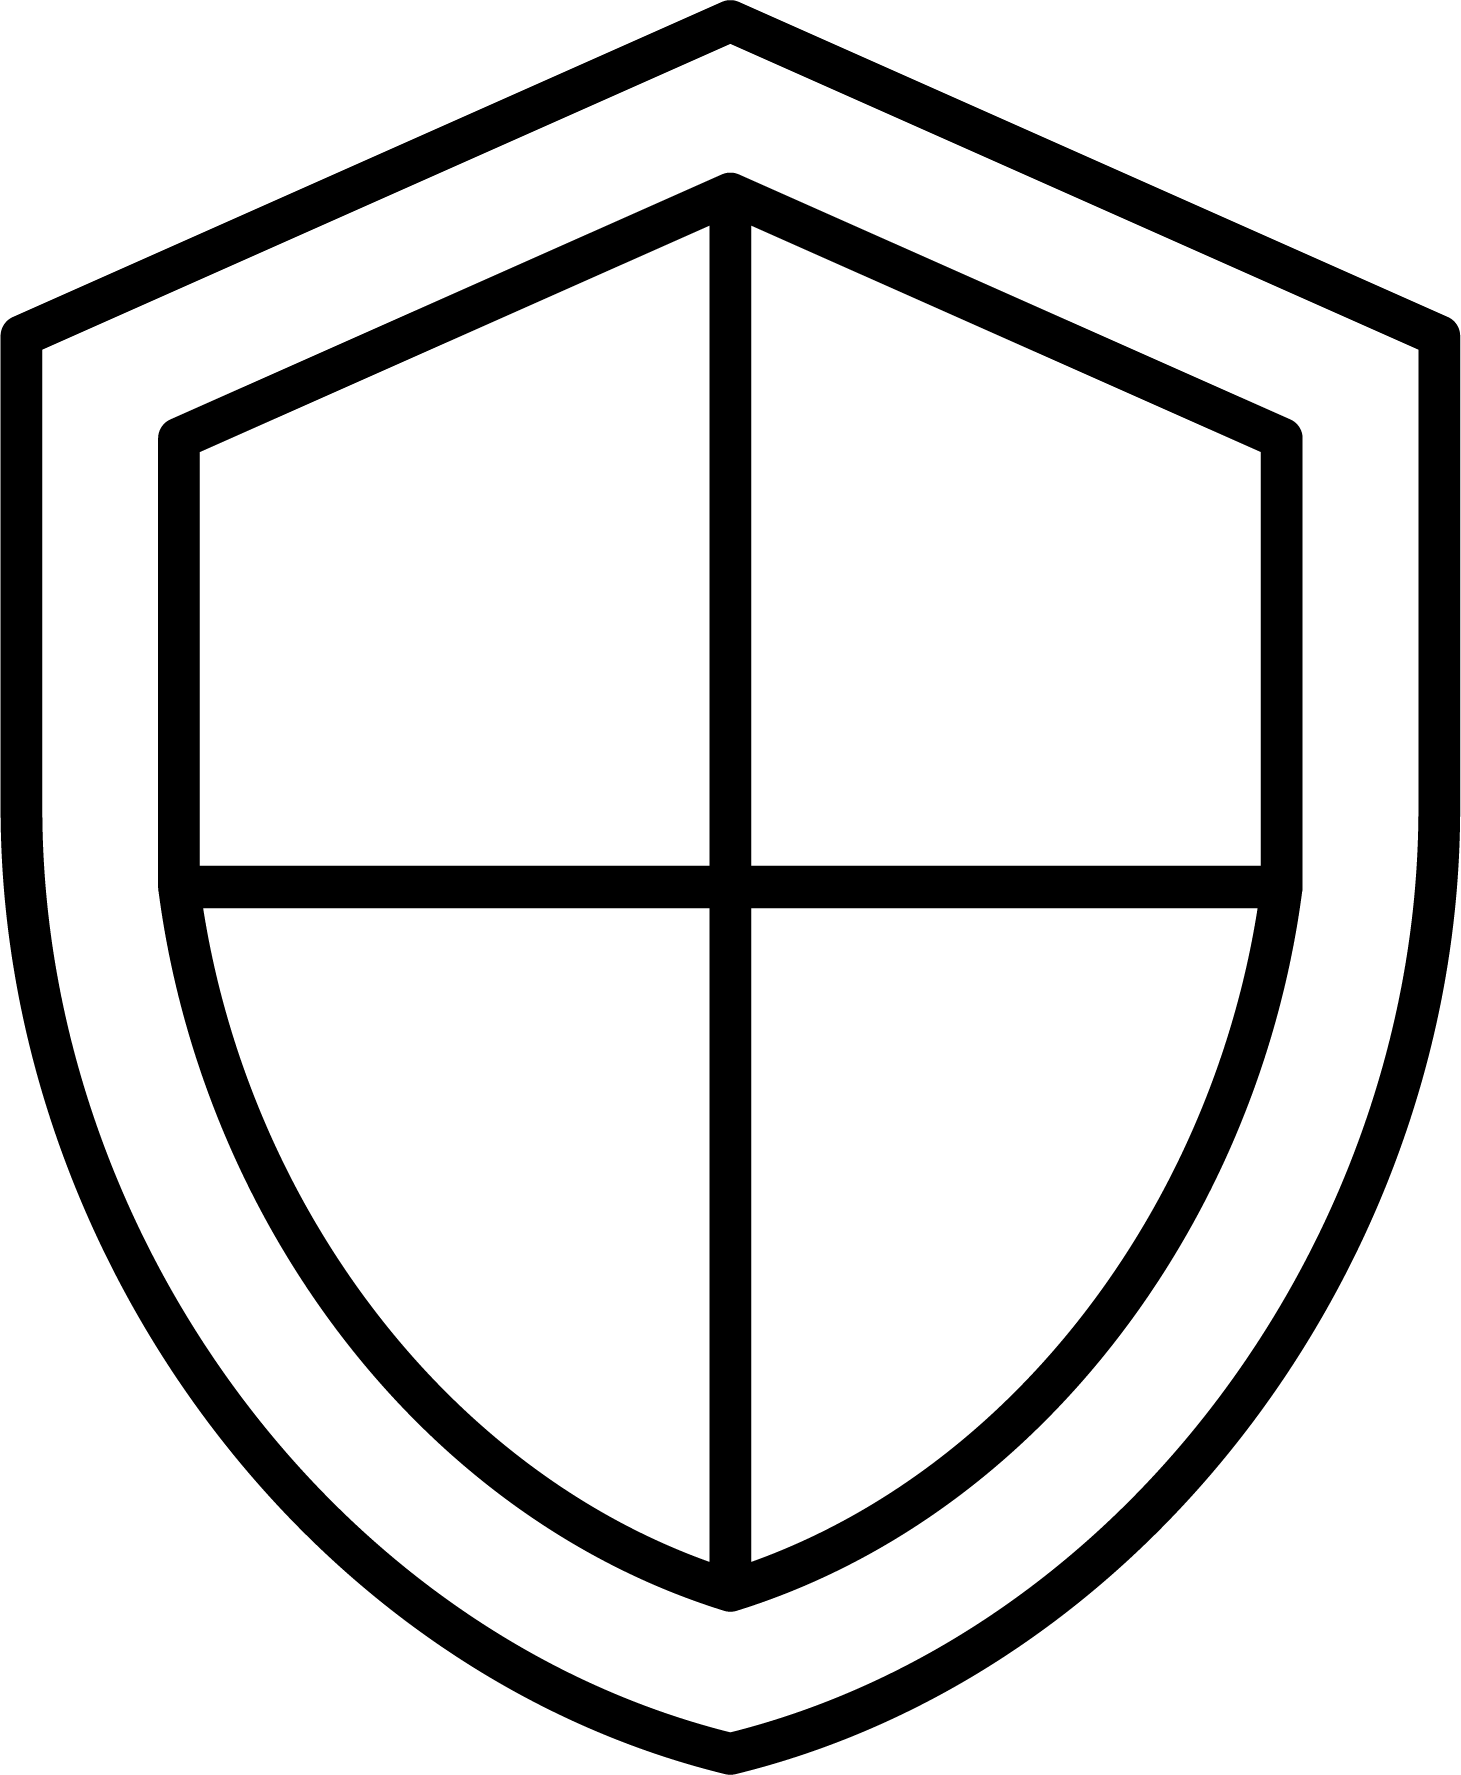 a black shield icon representing CTC privacy policy